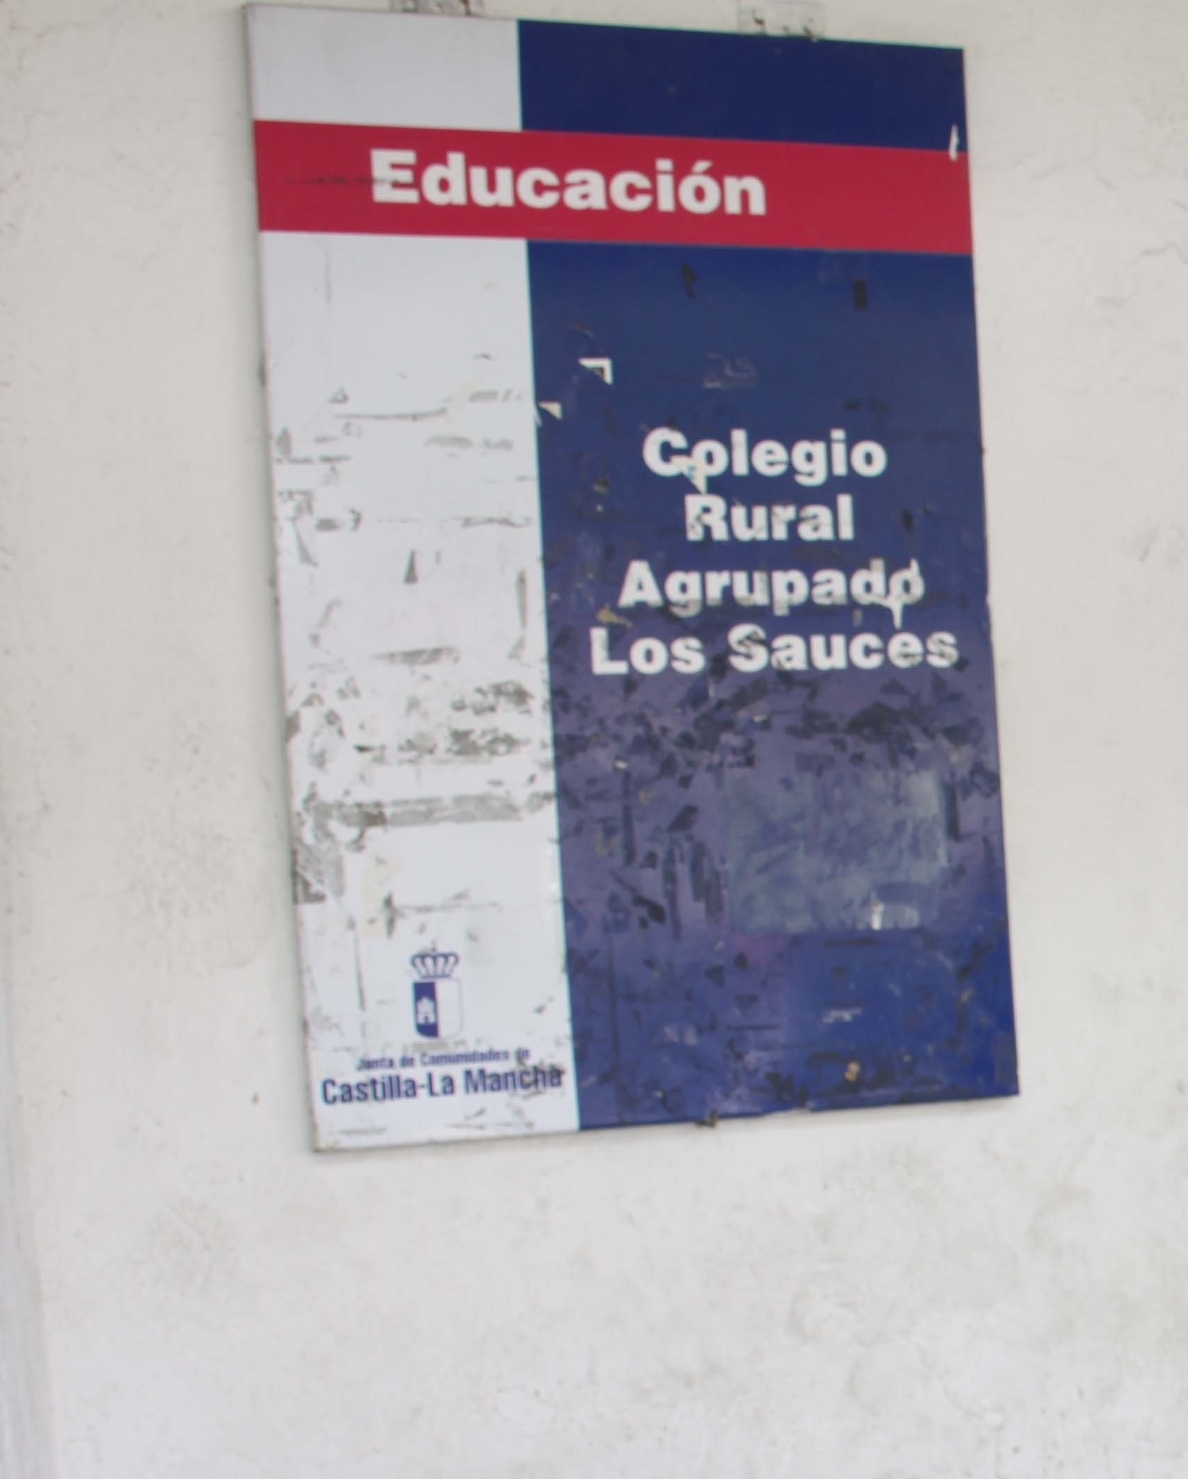 TSJCM declara la nulidad de la supresión de la escuela rural de Puente Vadillos por parte de Educación